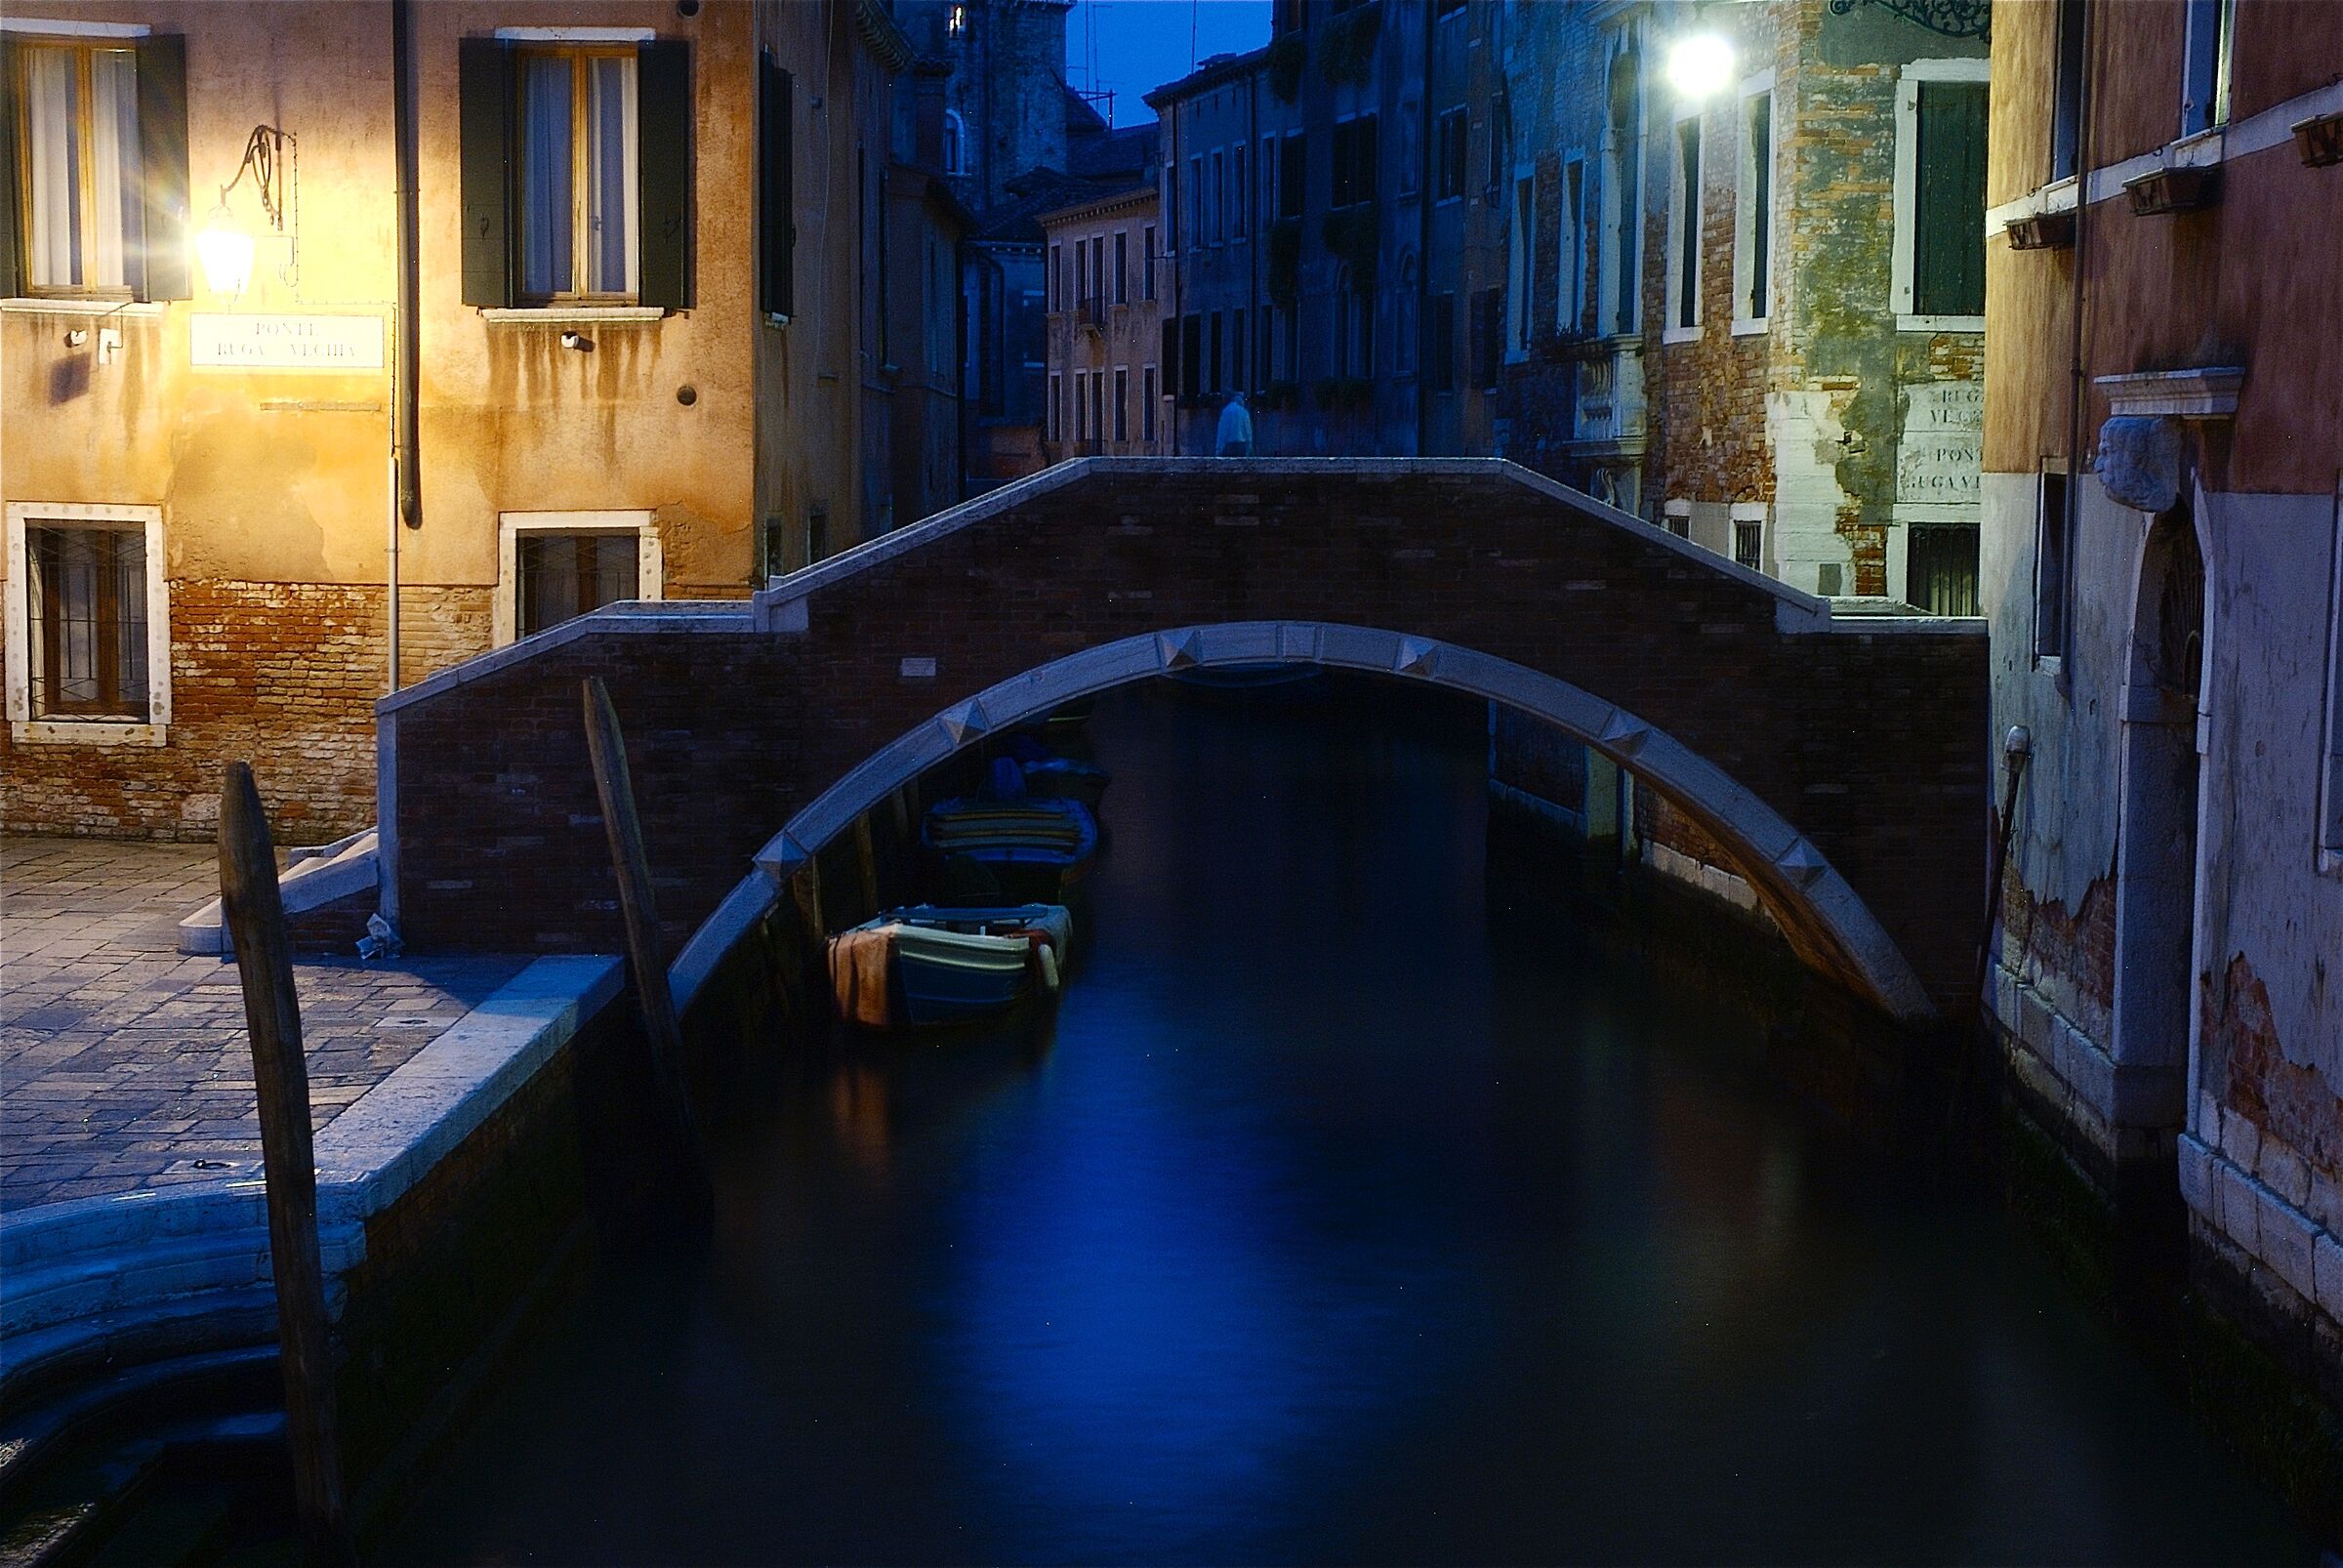 Venetian atmosphere...